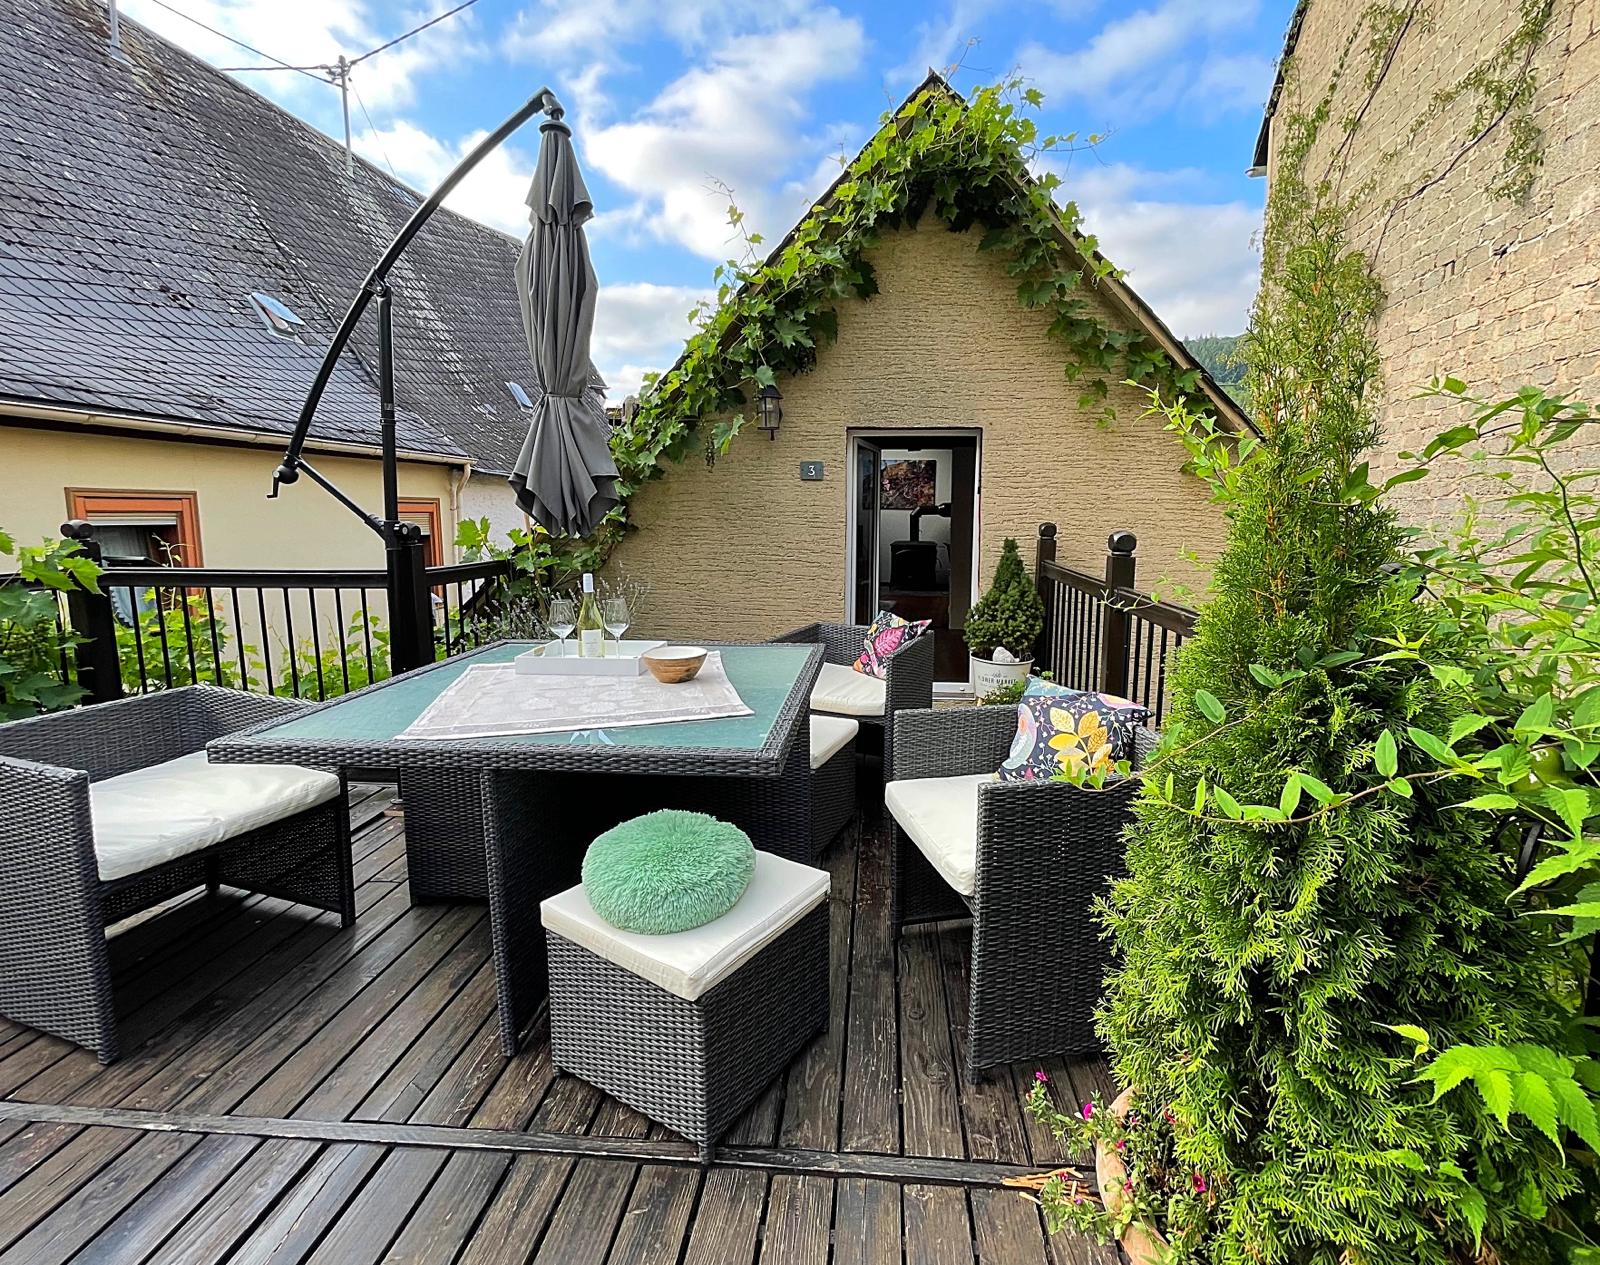 Ferienwohnung - Kleines Haus - gemütliche Terrasse ...